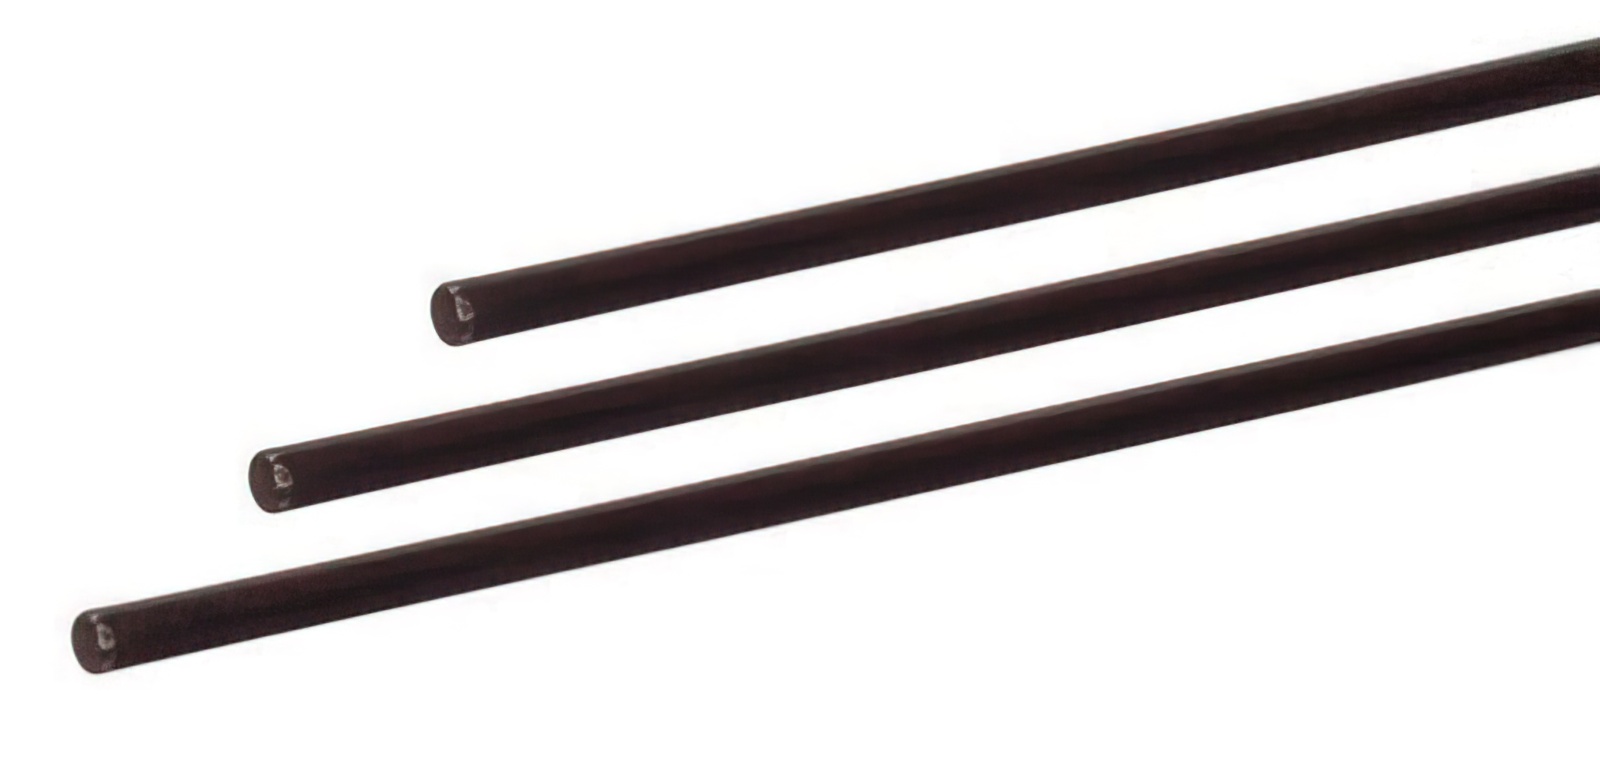 20 Stück - Gfk-Vollstab (Fiberglasstab/Glasfaserstab) 5 mm 200 cm schwarz für Drachen- und Modellbau Basteln Montagen Messebau Industrie Haushalt